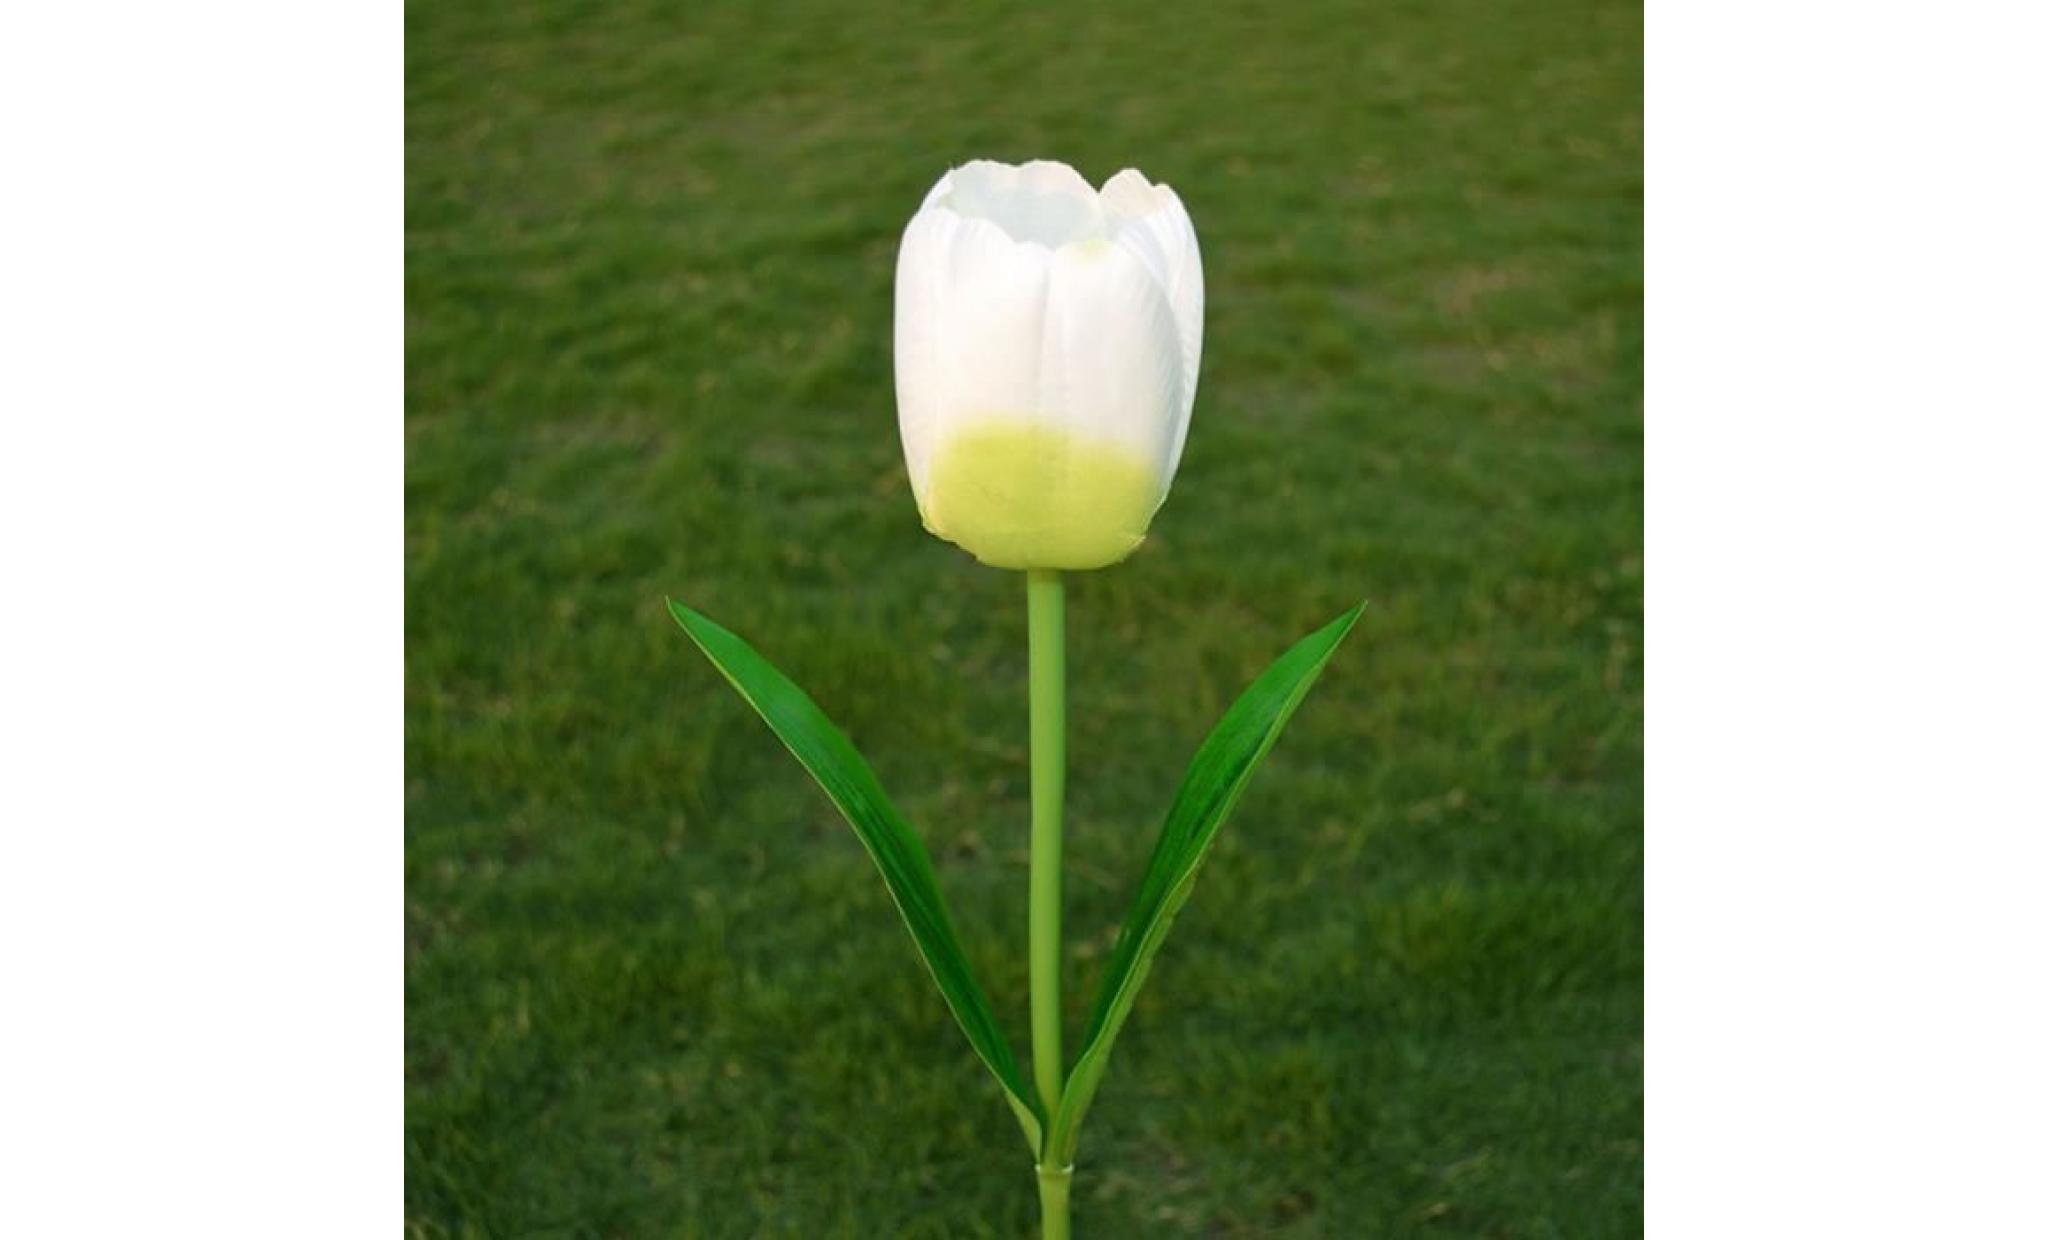 borne solaire 1 tête solaire led lampe décorative extérieure de pelouse 1 tête tulipe fleur lumière #pa 116 pas cher